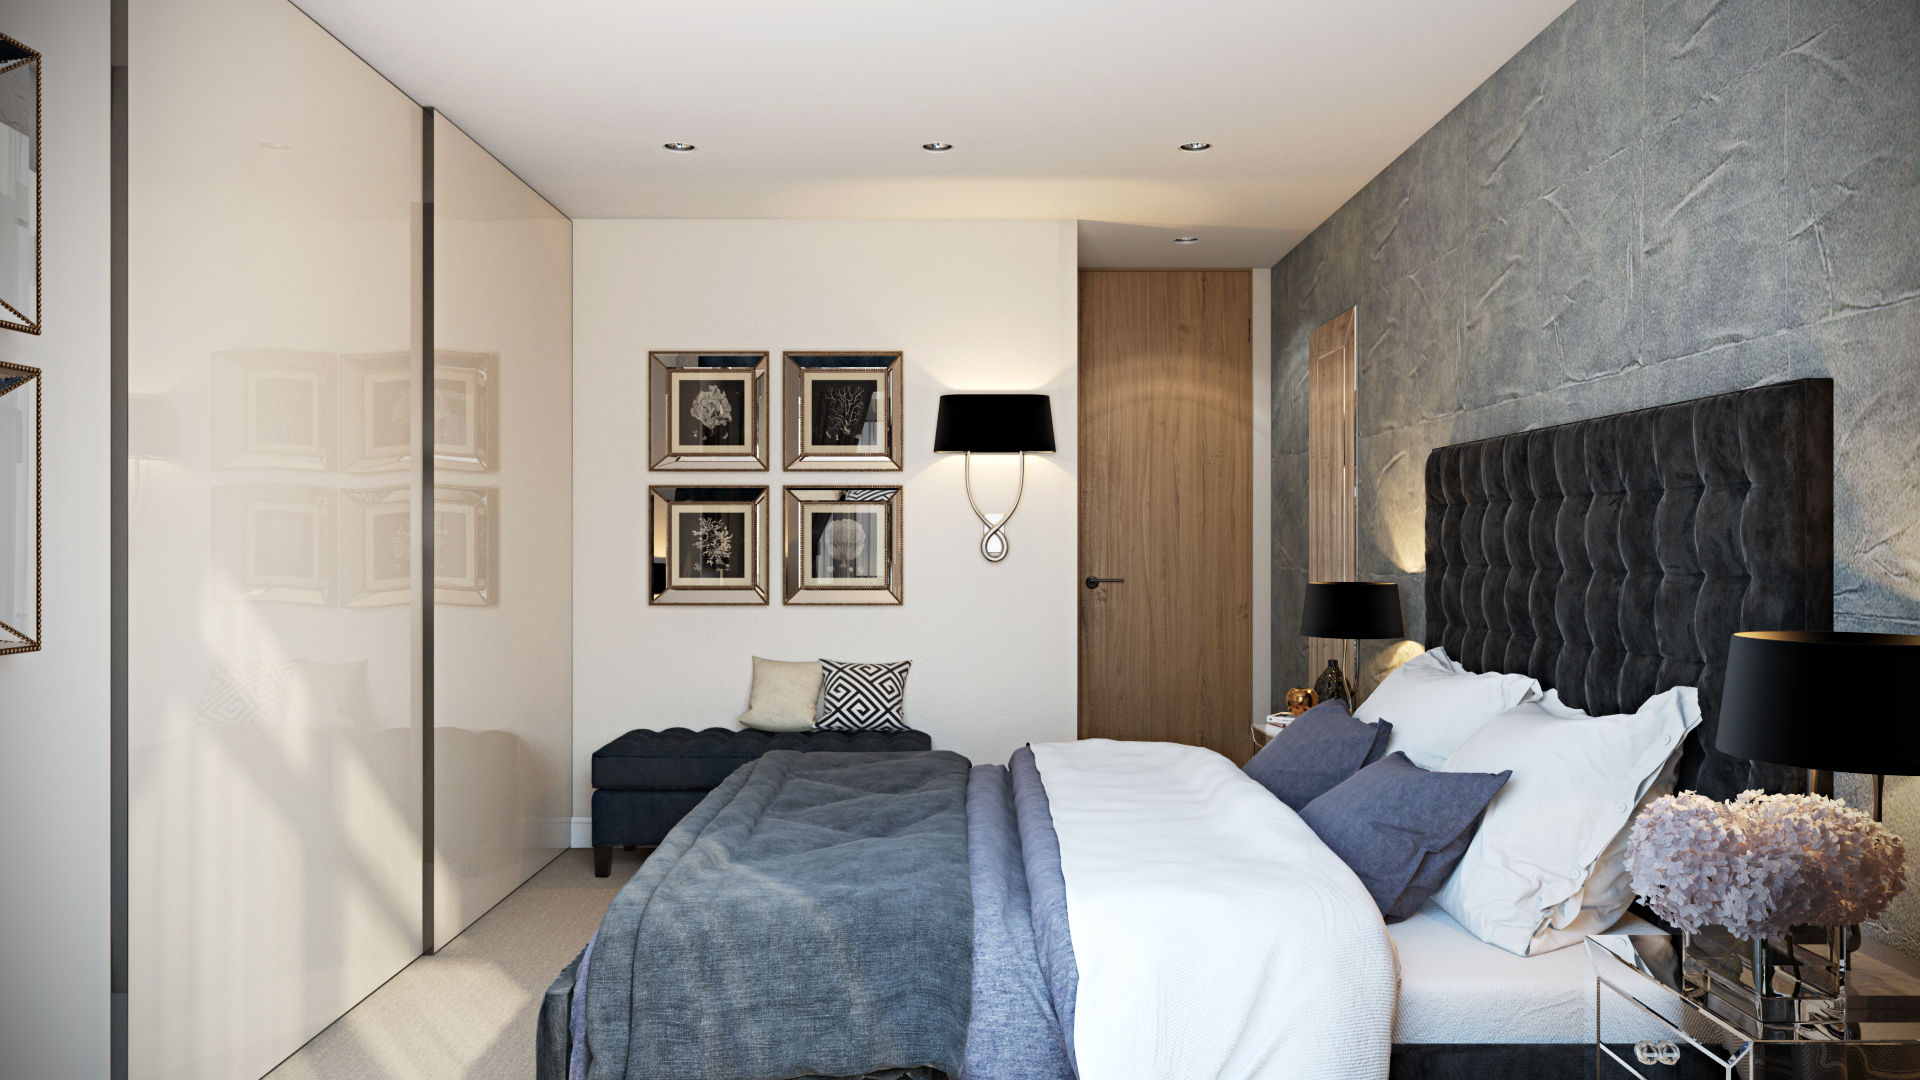 Bedroom Hampstead Design Hub Dormitorios modernos: Ideas, imágenes y decoración wall colours,wall art,bed,built-in storage,wardrobe,wall lighting